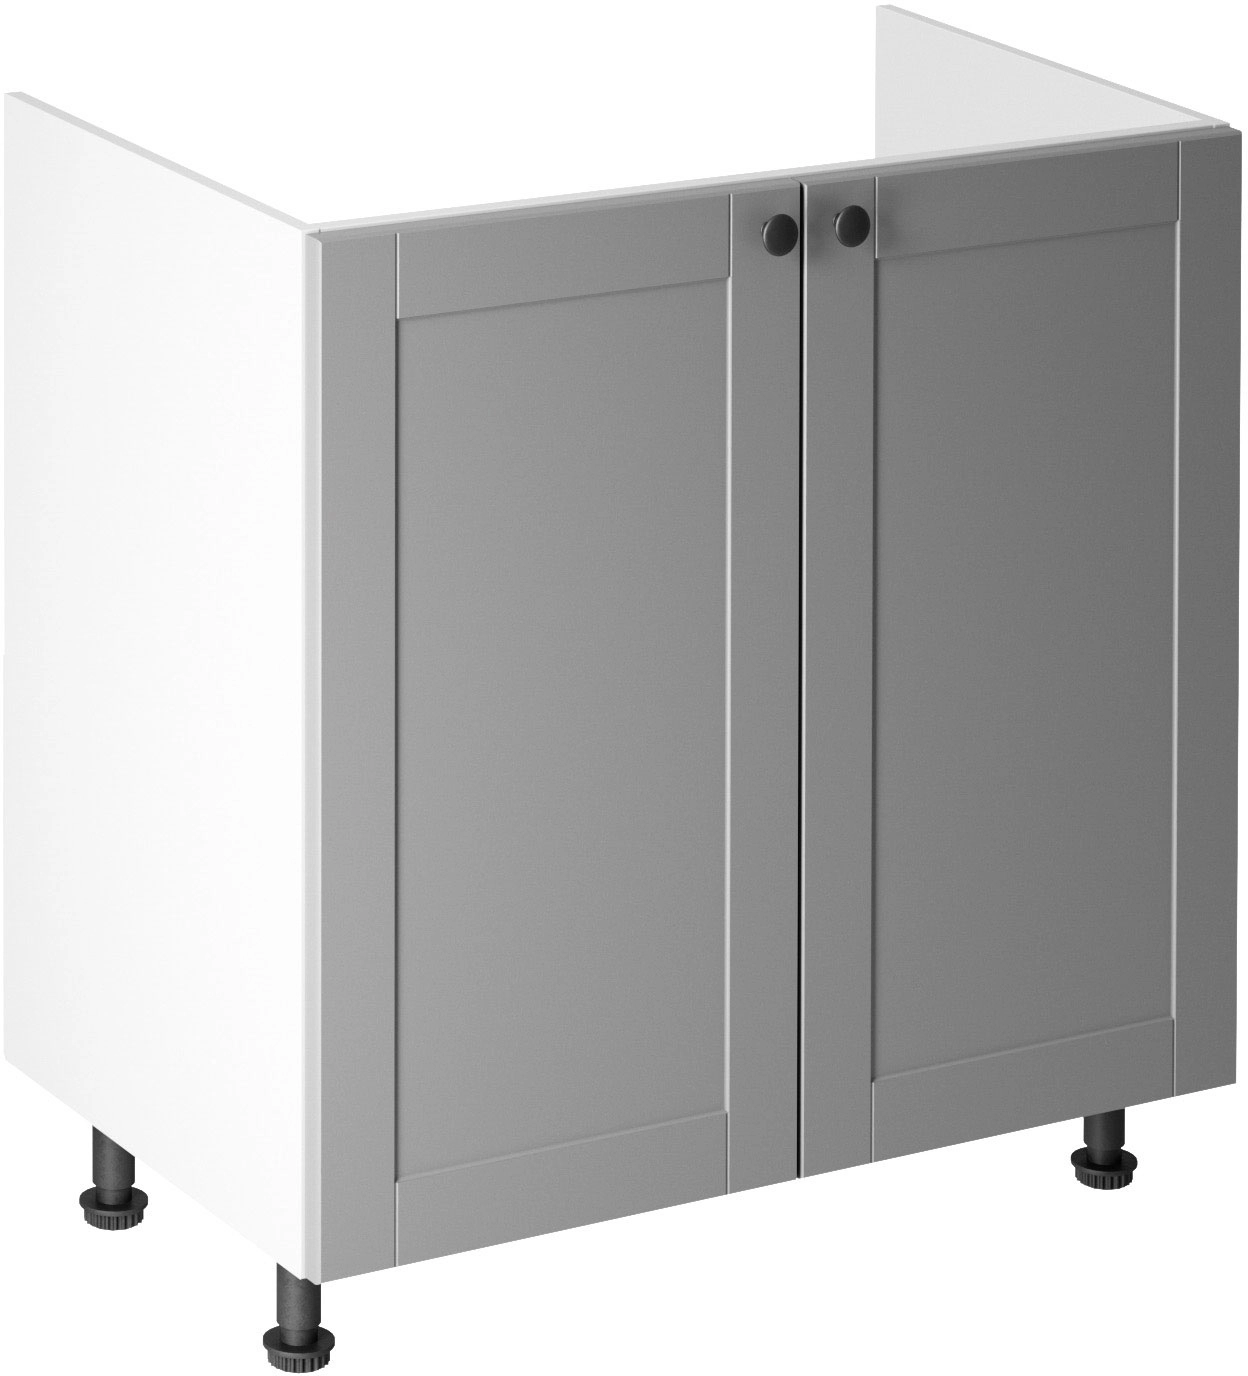 Linea Grey D80Z alsó konyhaszekrény, szürke / fehér